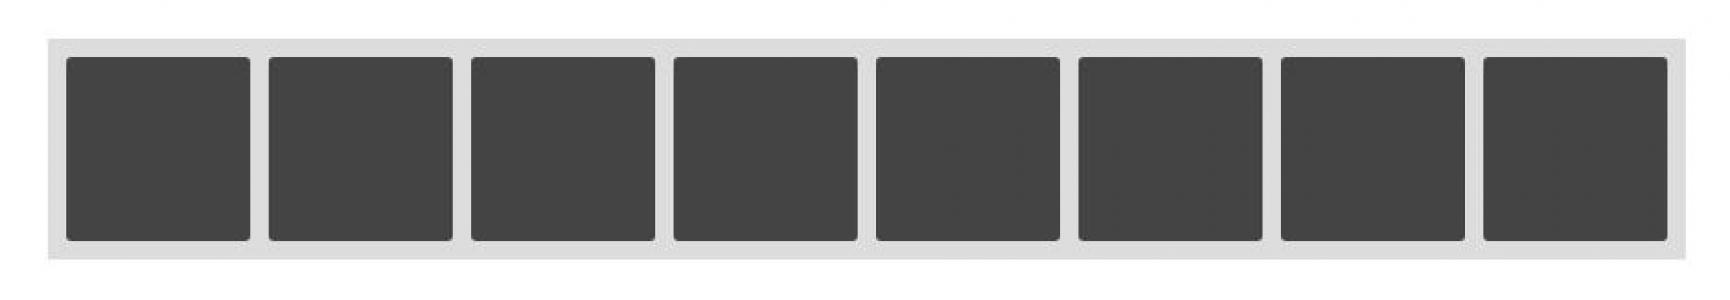 响应式CSS设计显示屏幕的项目数